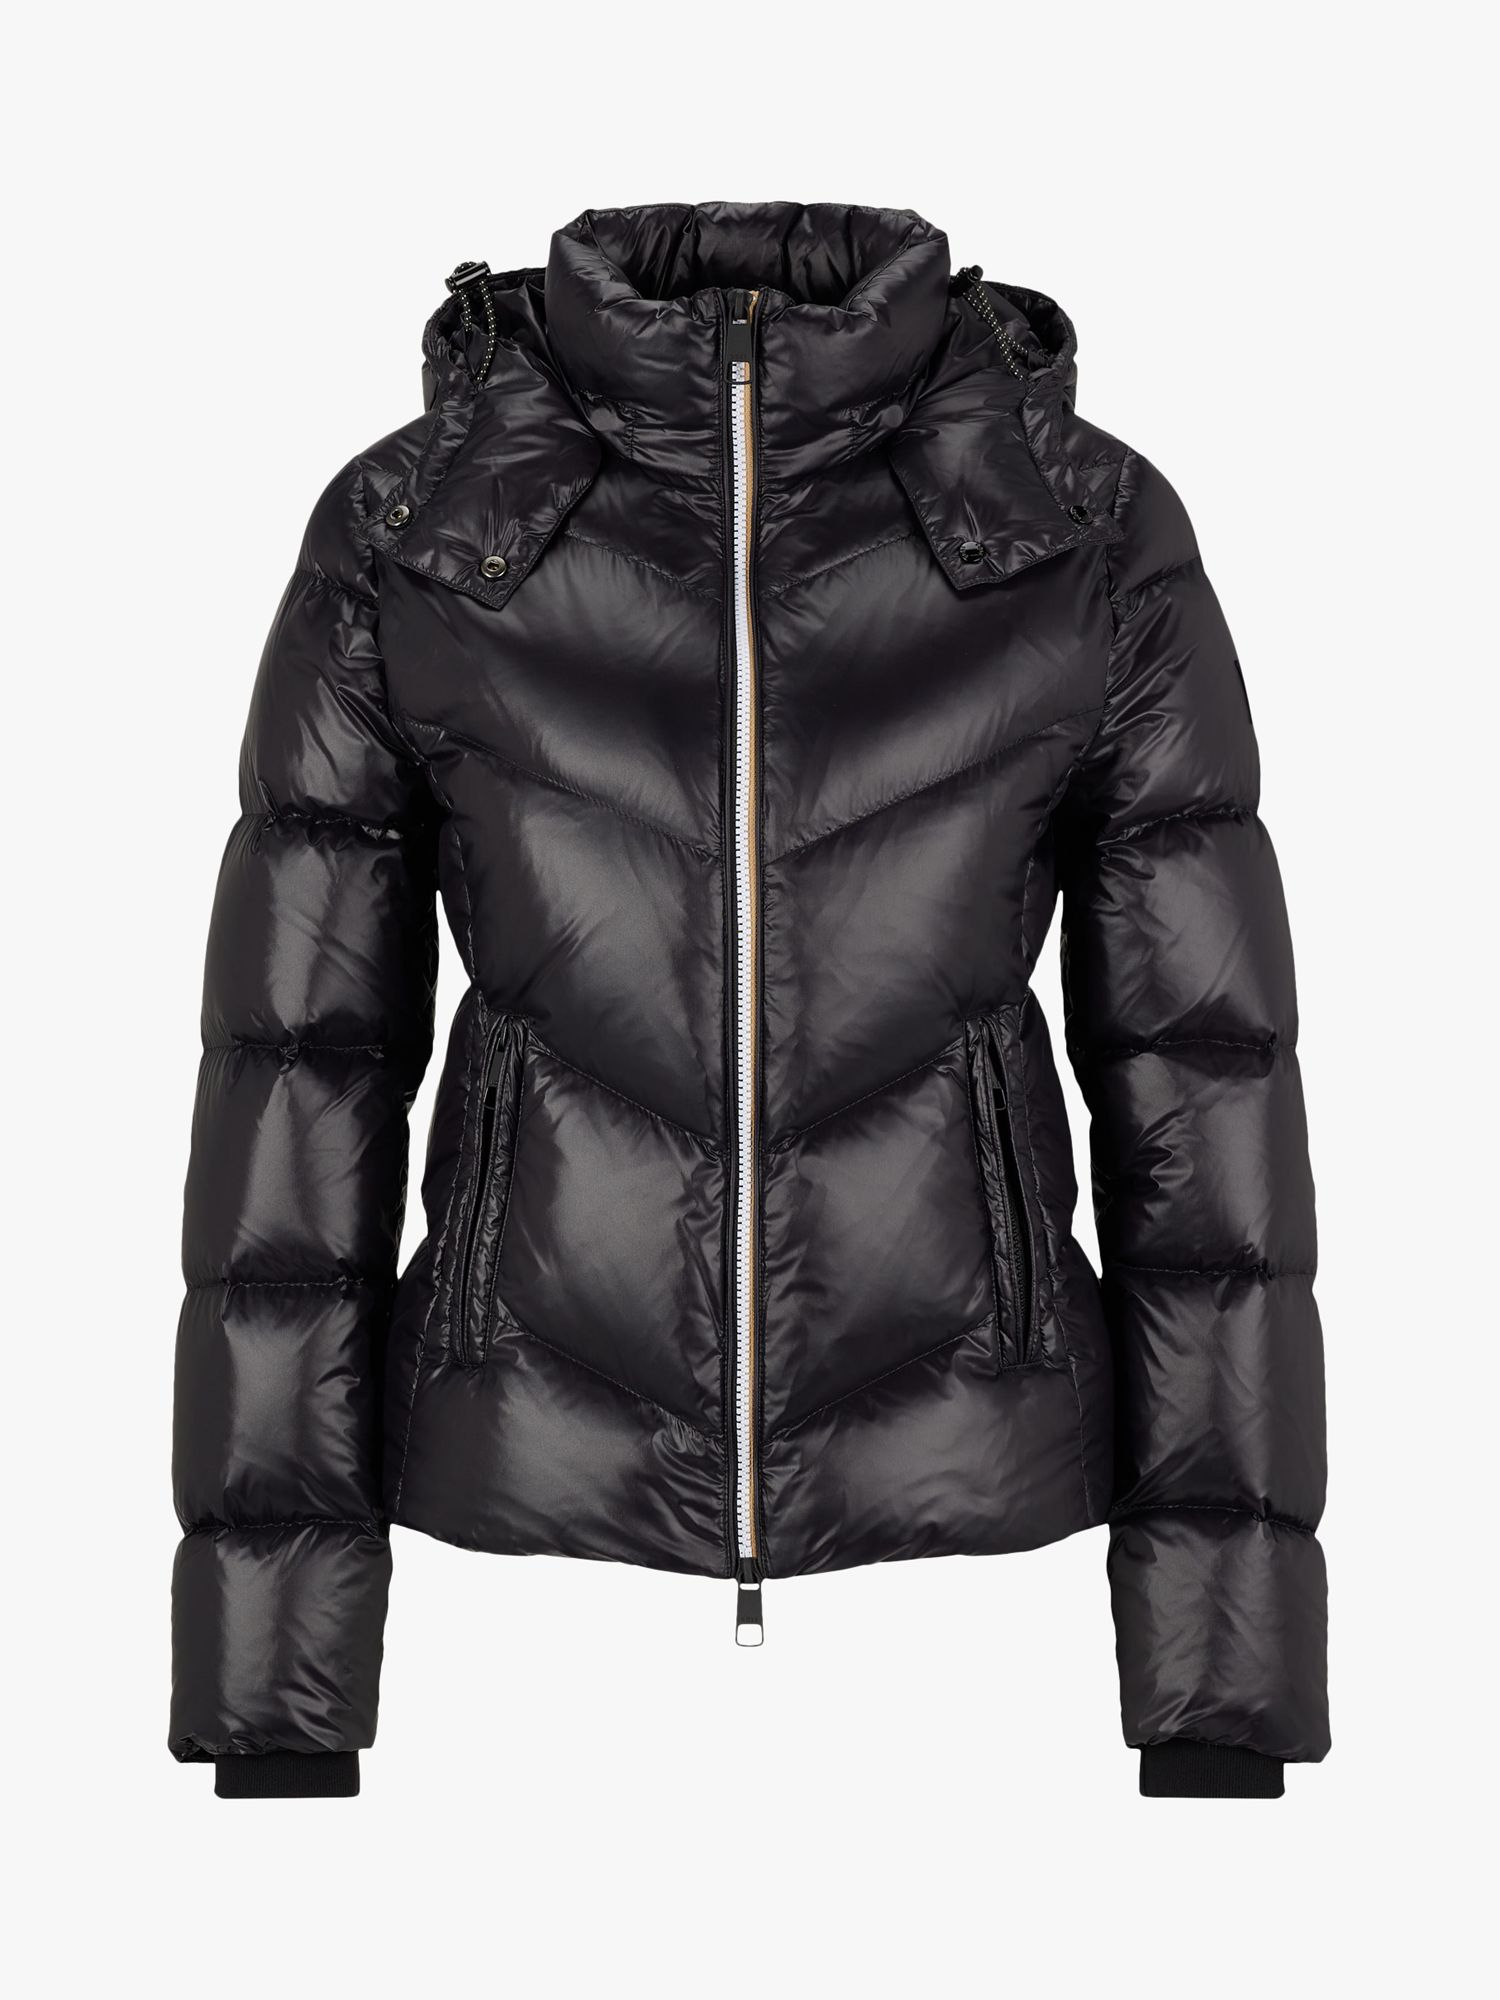 HUGO BOSS Pepule Quilted Hooded Jacket, Black, 6